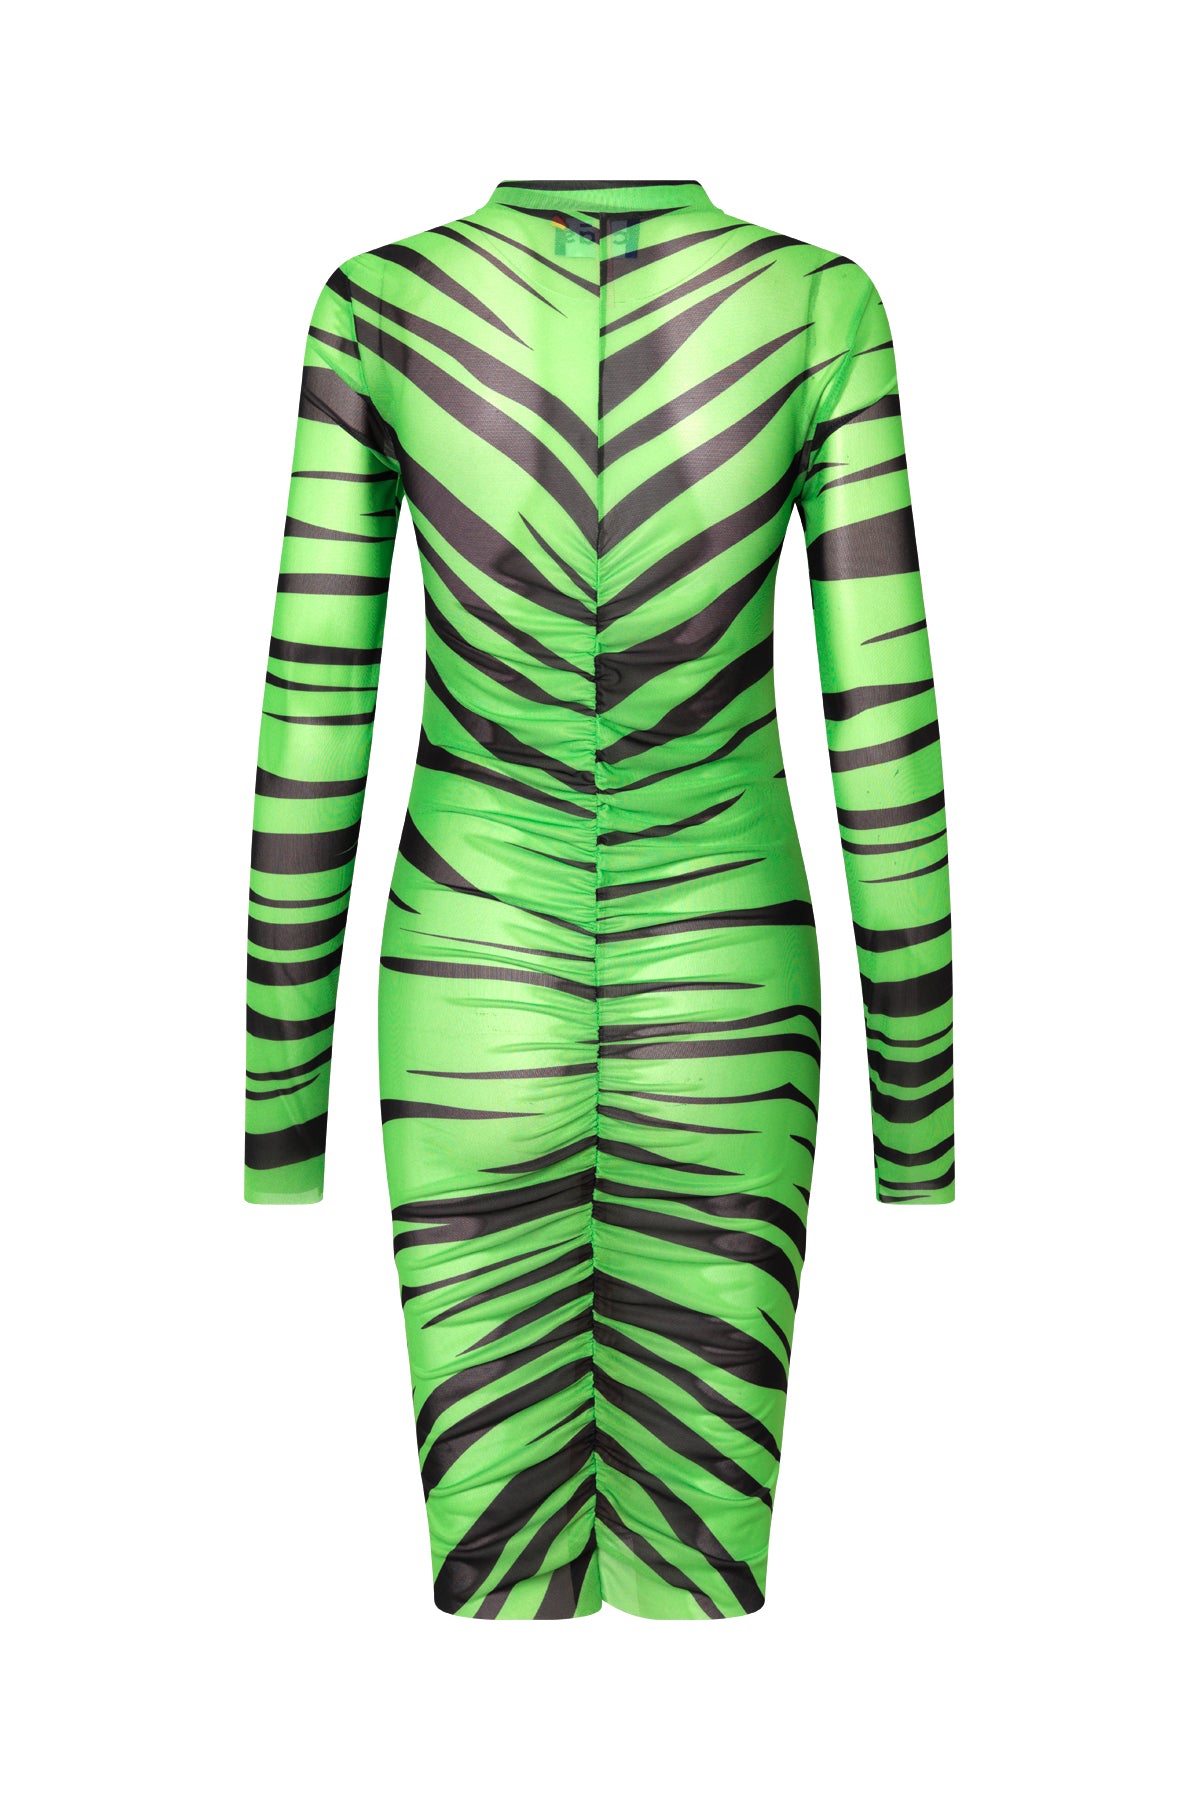 CRAS Tara Dress Dress Tiger Green